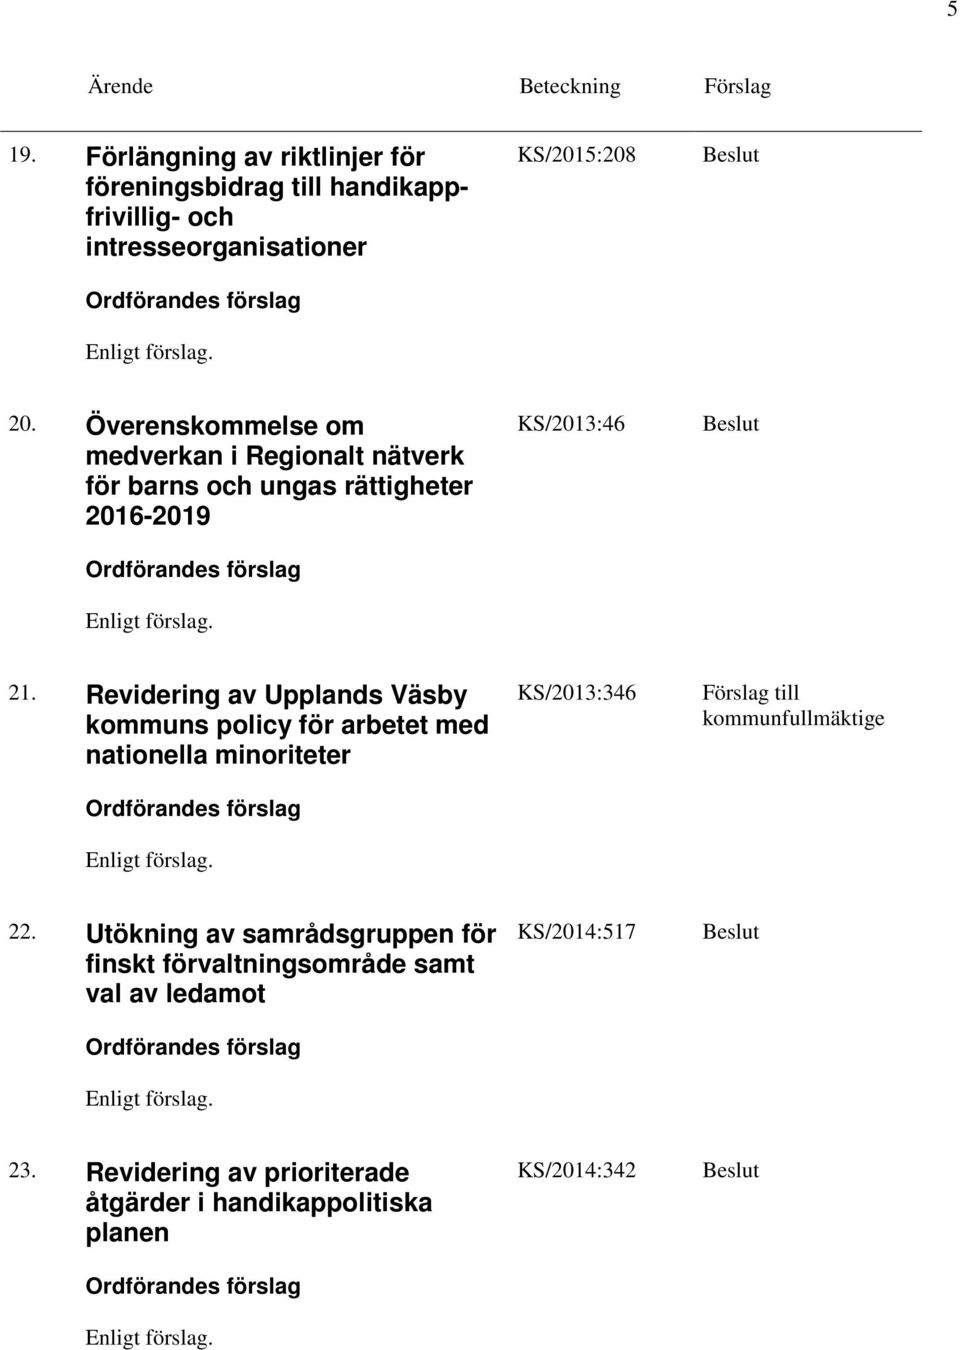 Revidering av Upplands Väsby kommuns policy för arbetet med nationella minoriteter KS/2013:346 22.